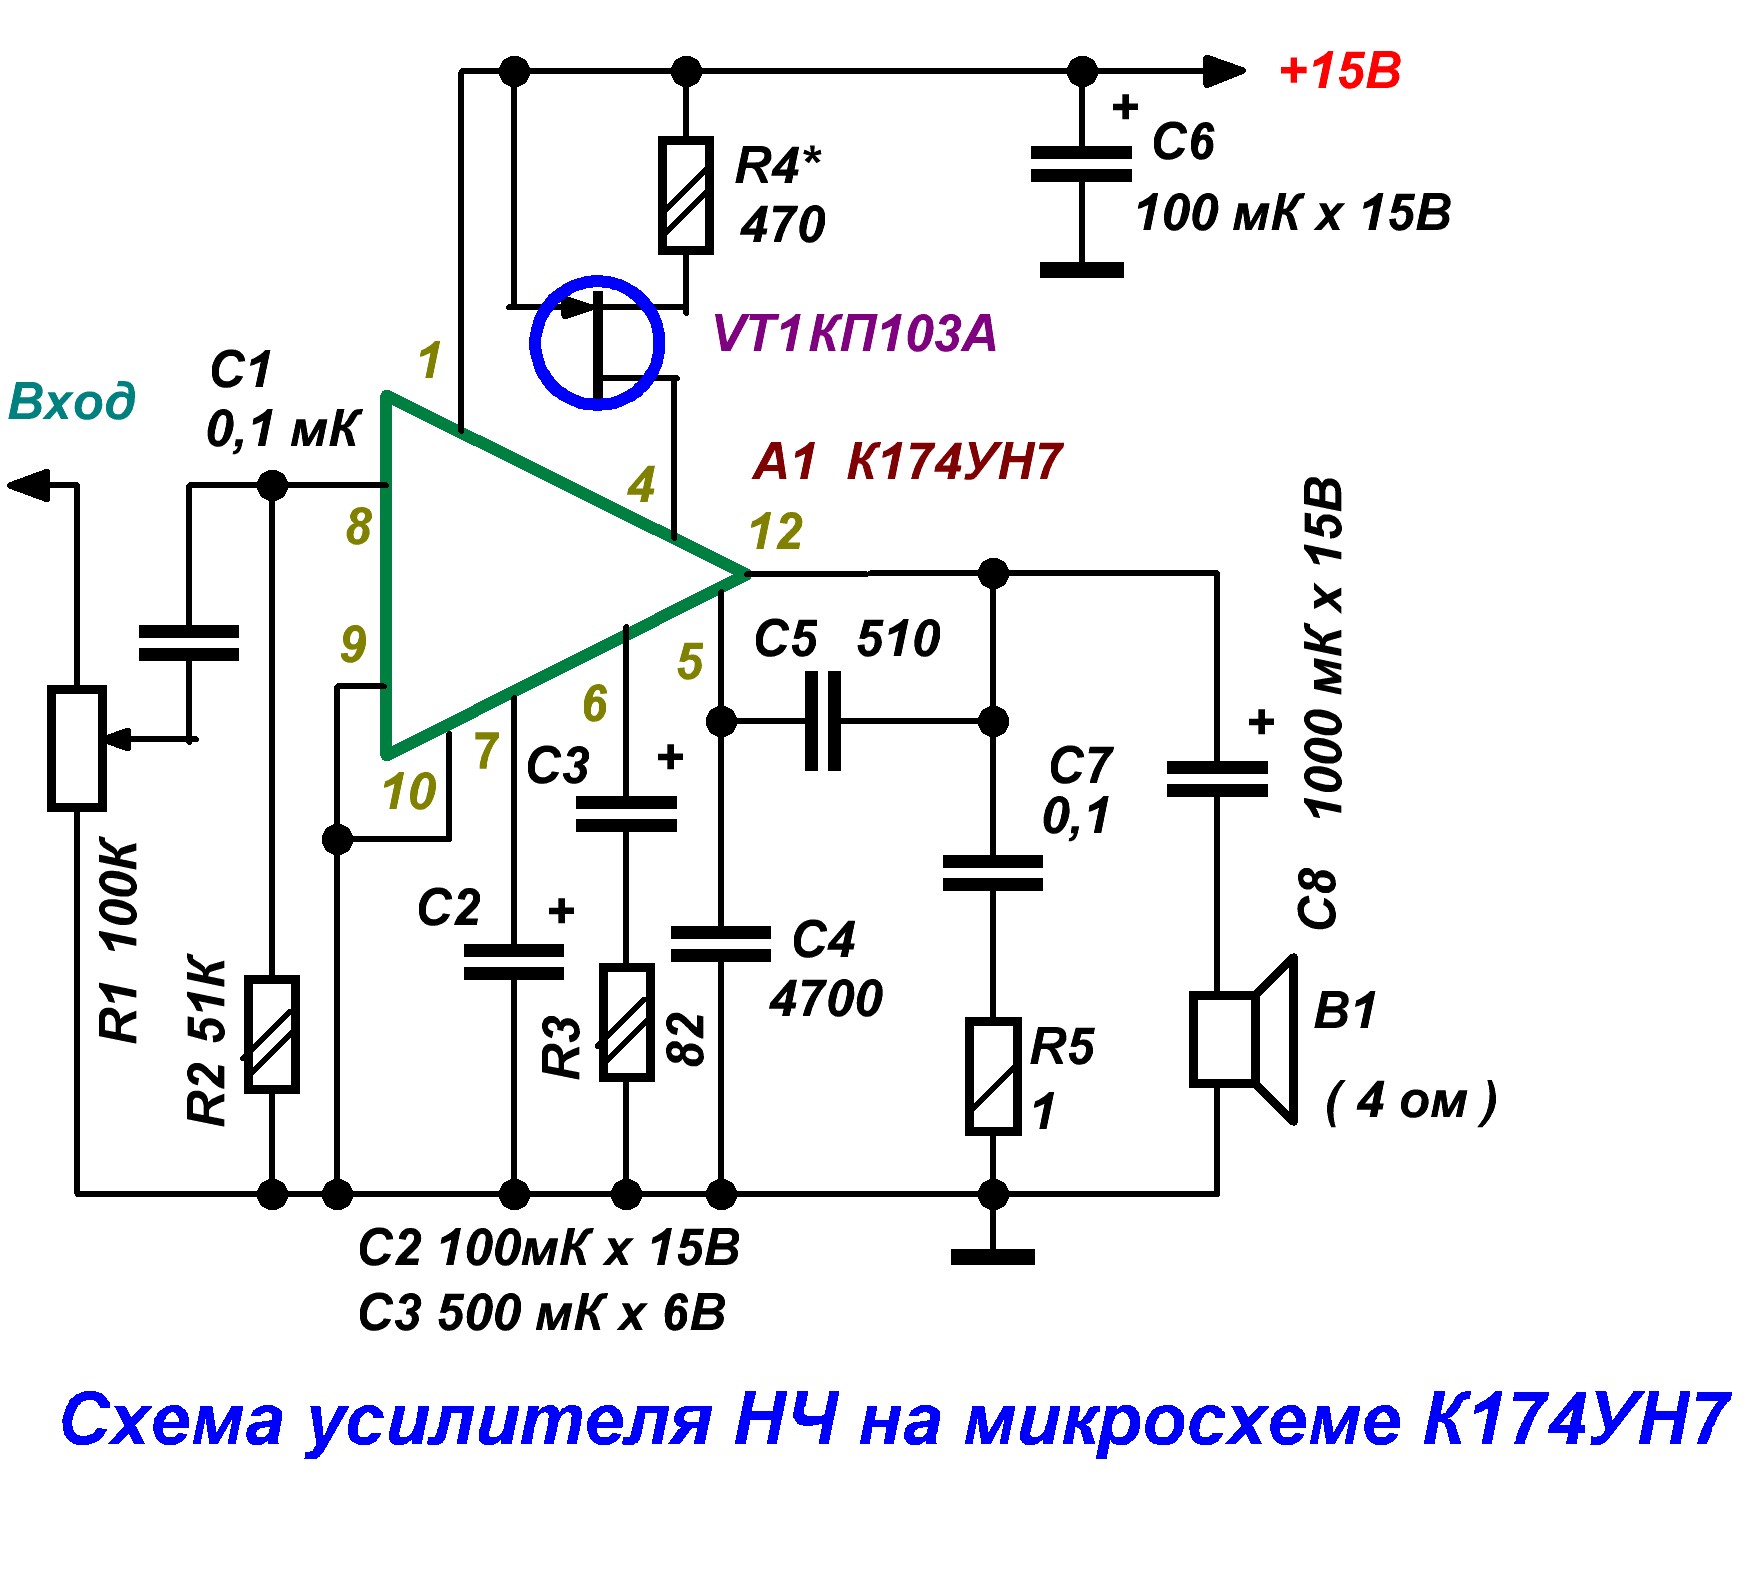 Техническая документация к электронным компонентам на русском языке.